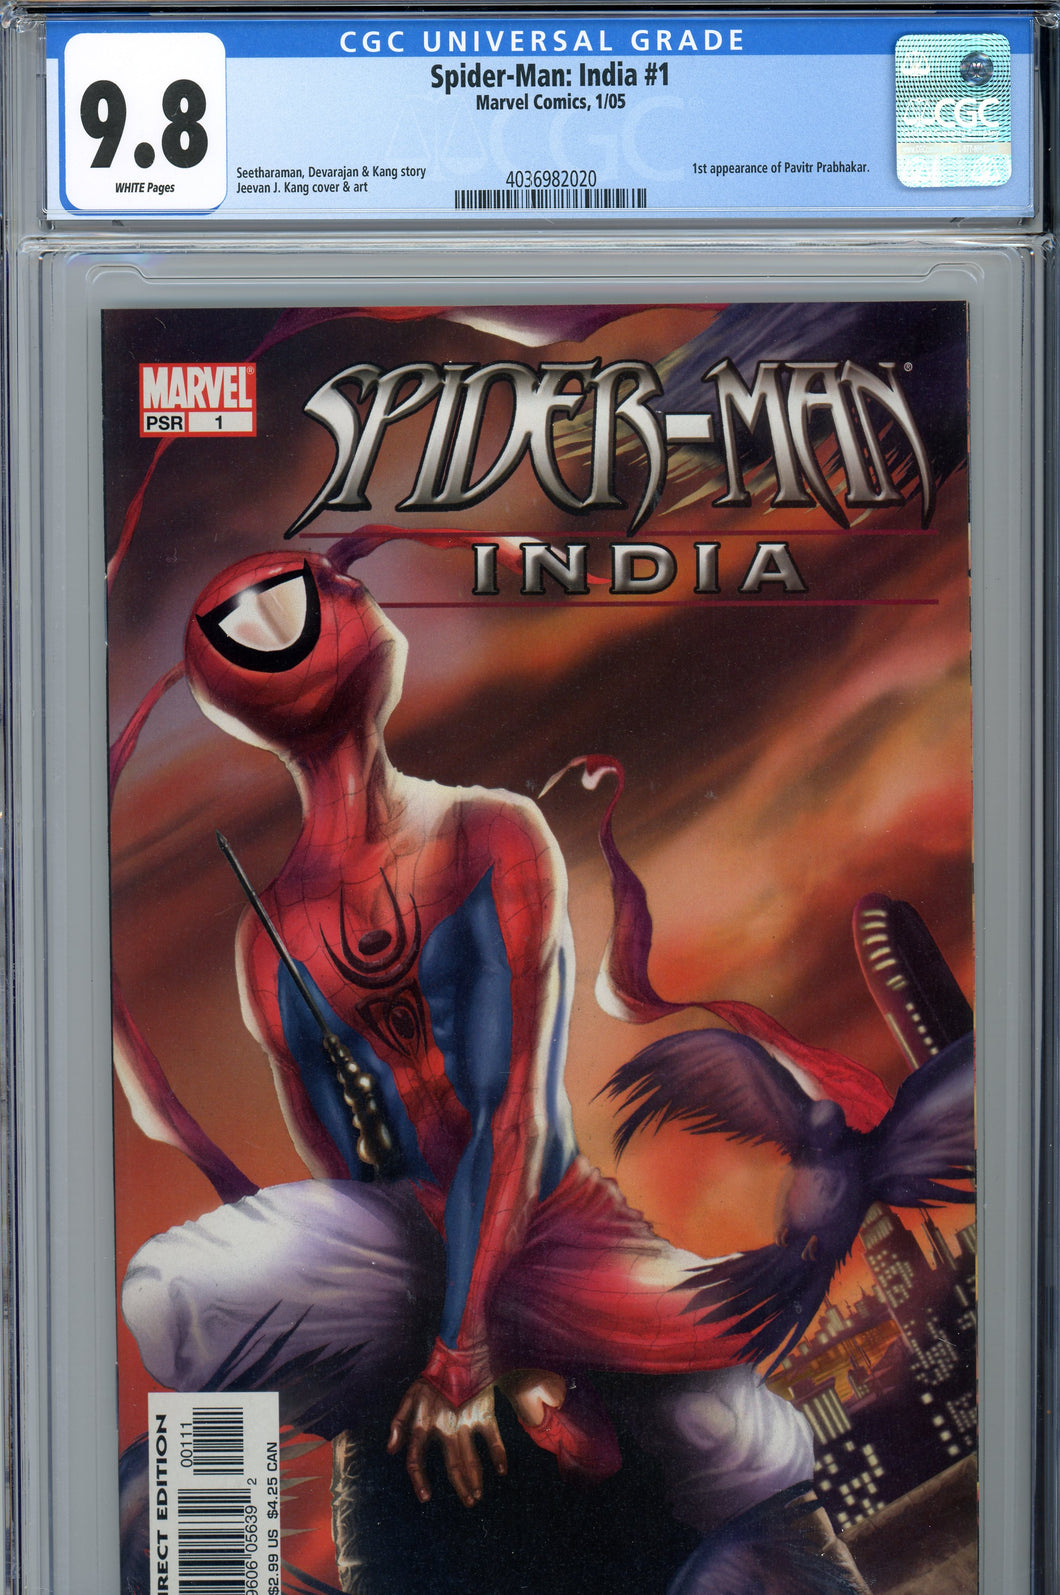 Spider-Man India CGC 9.8